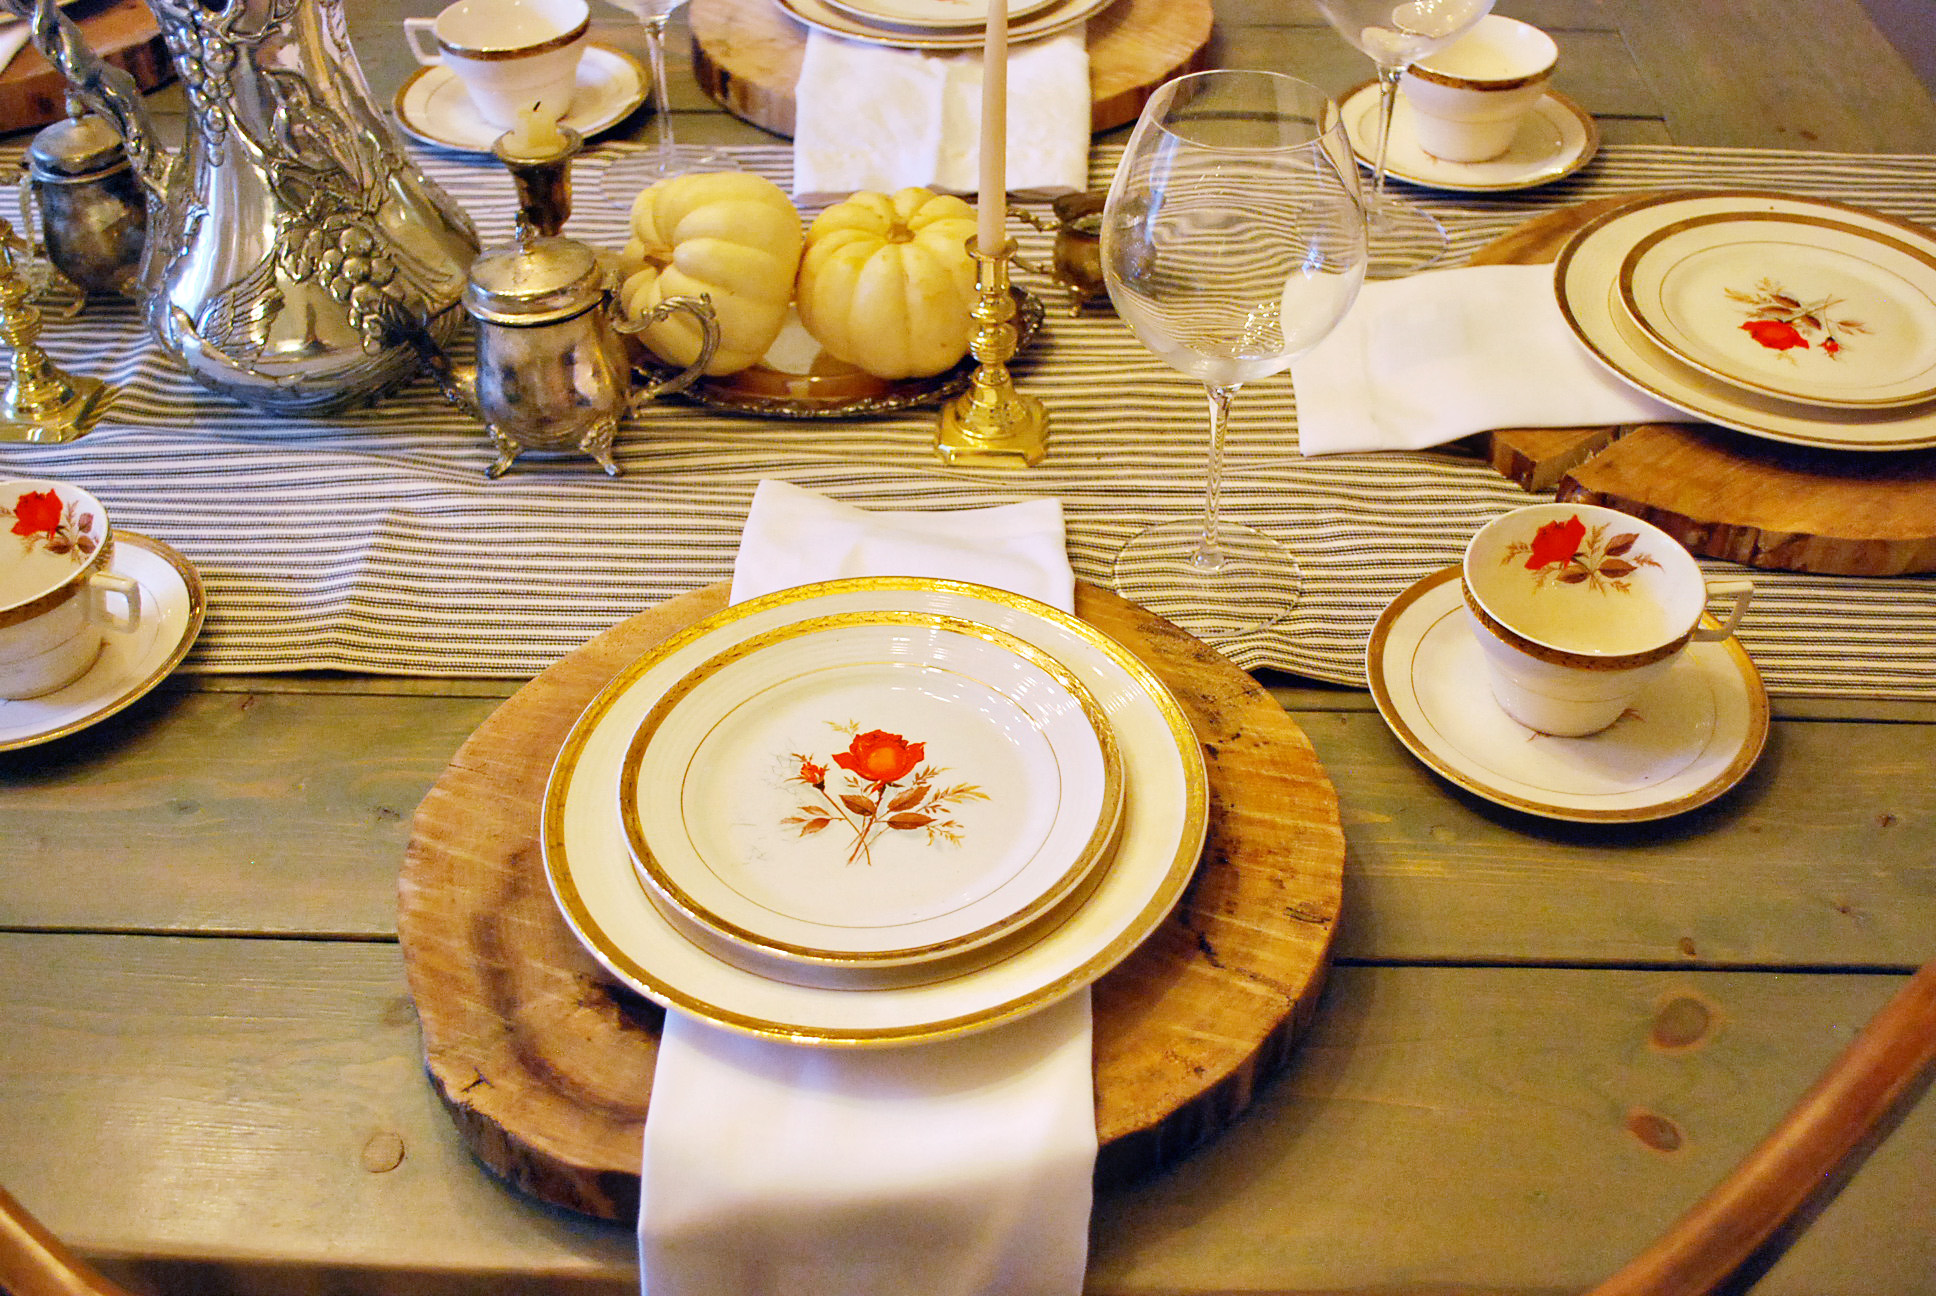 Ставить тарелку на стол. Посуда для сервировки стола. Красивая посуда на столе. Сервировка в русском стиле. Ресторанная сервировка стола.